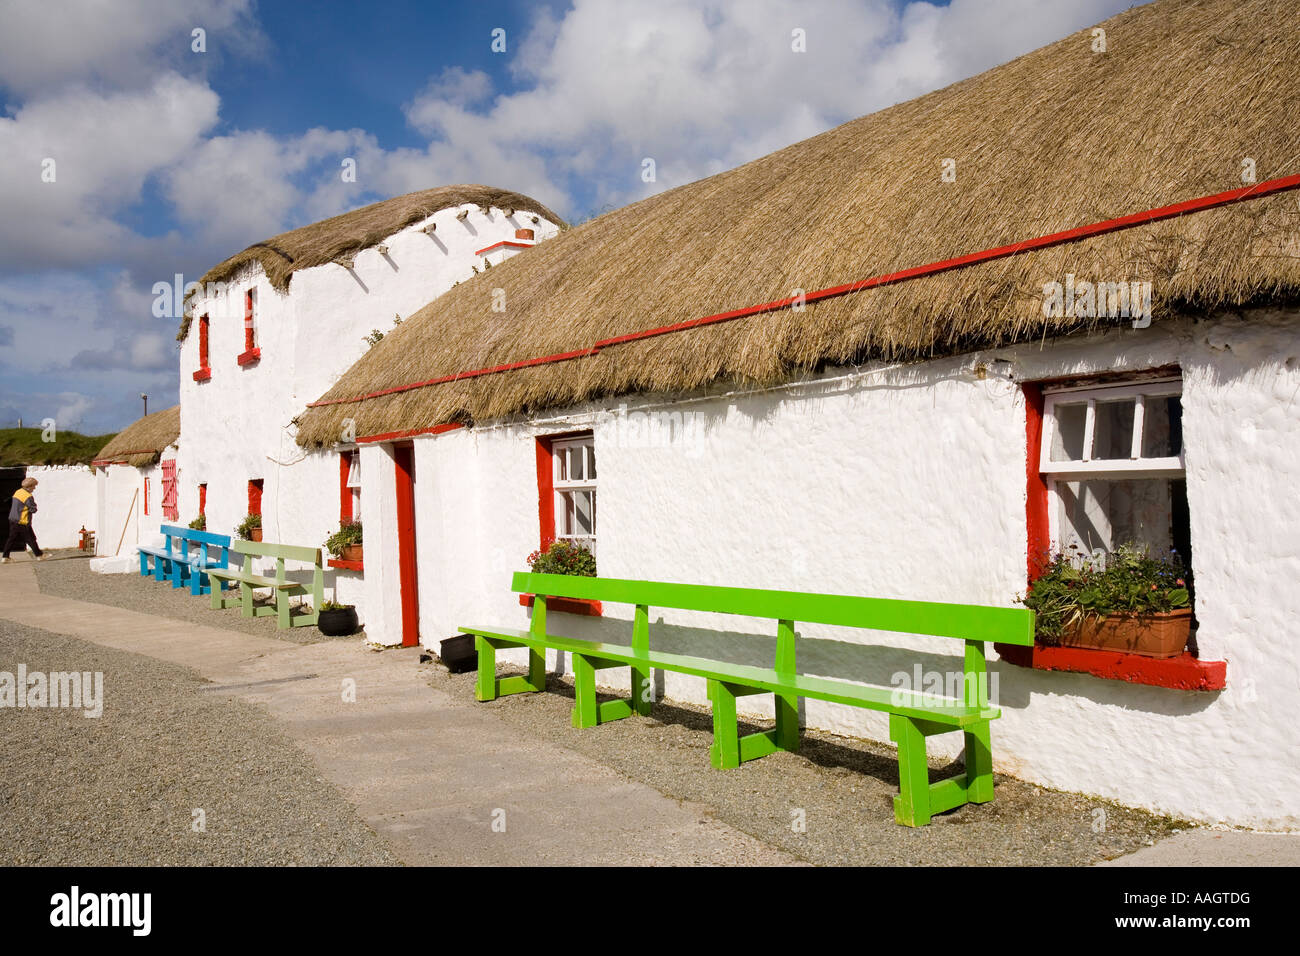 La péninsule d'Inishowen Donegal Irlande Île de Doagh Famine Village house in 1900s street Banque D'Images